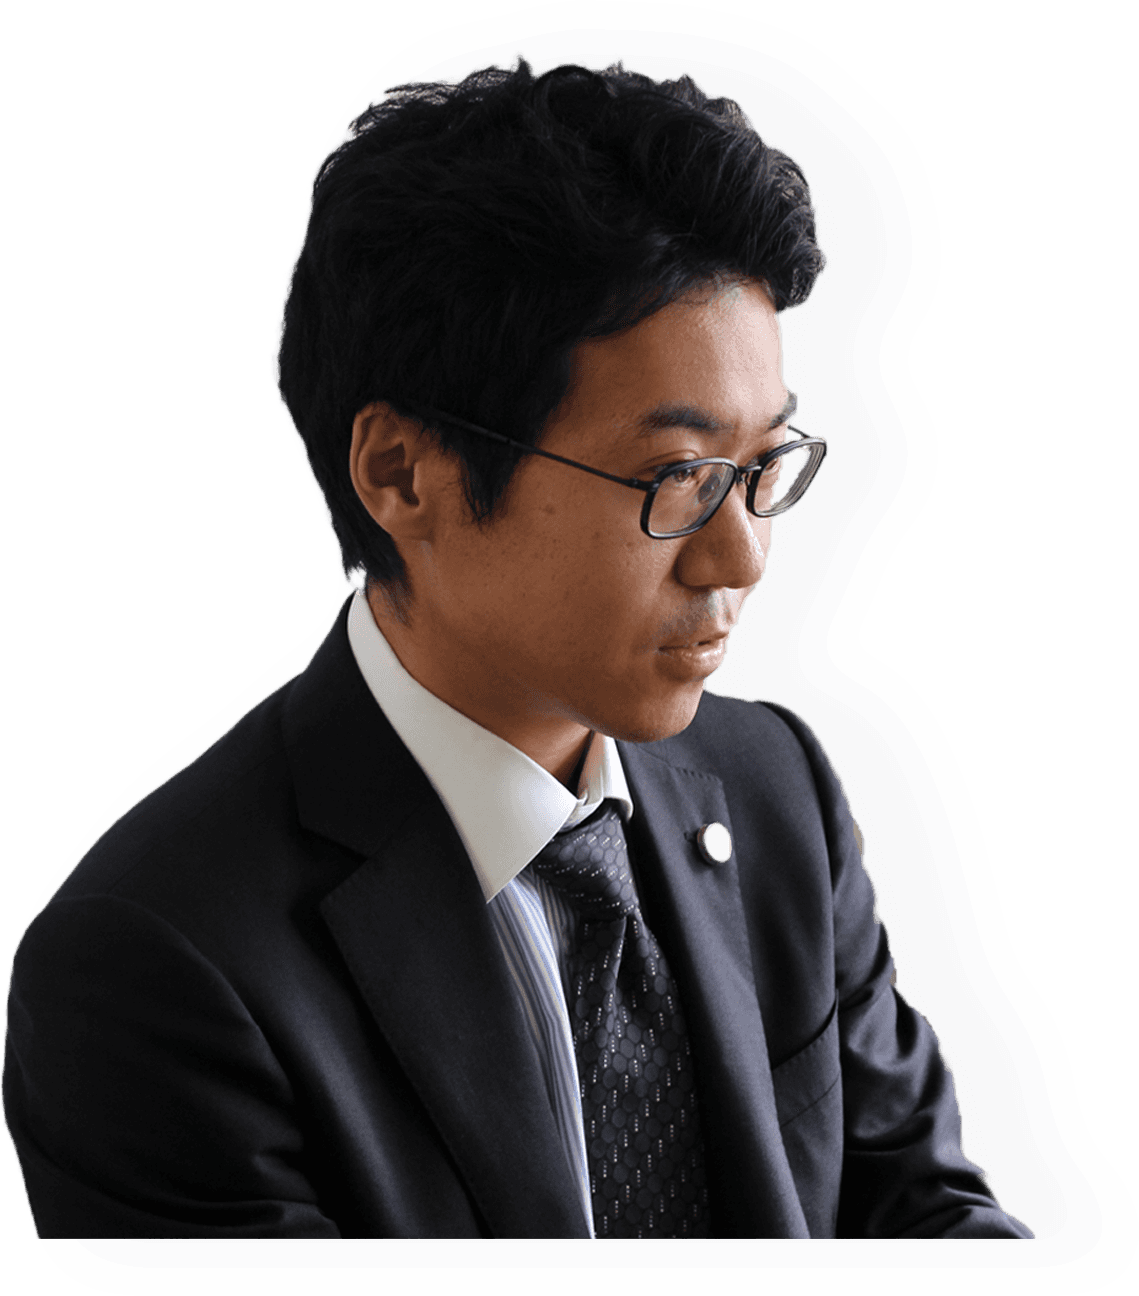 ネットトラブルに強い山田敬純弁護士